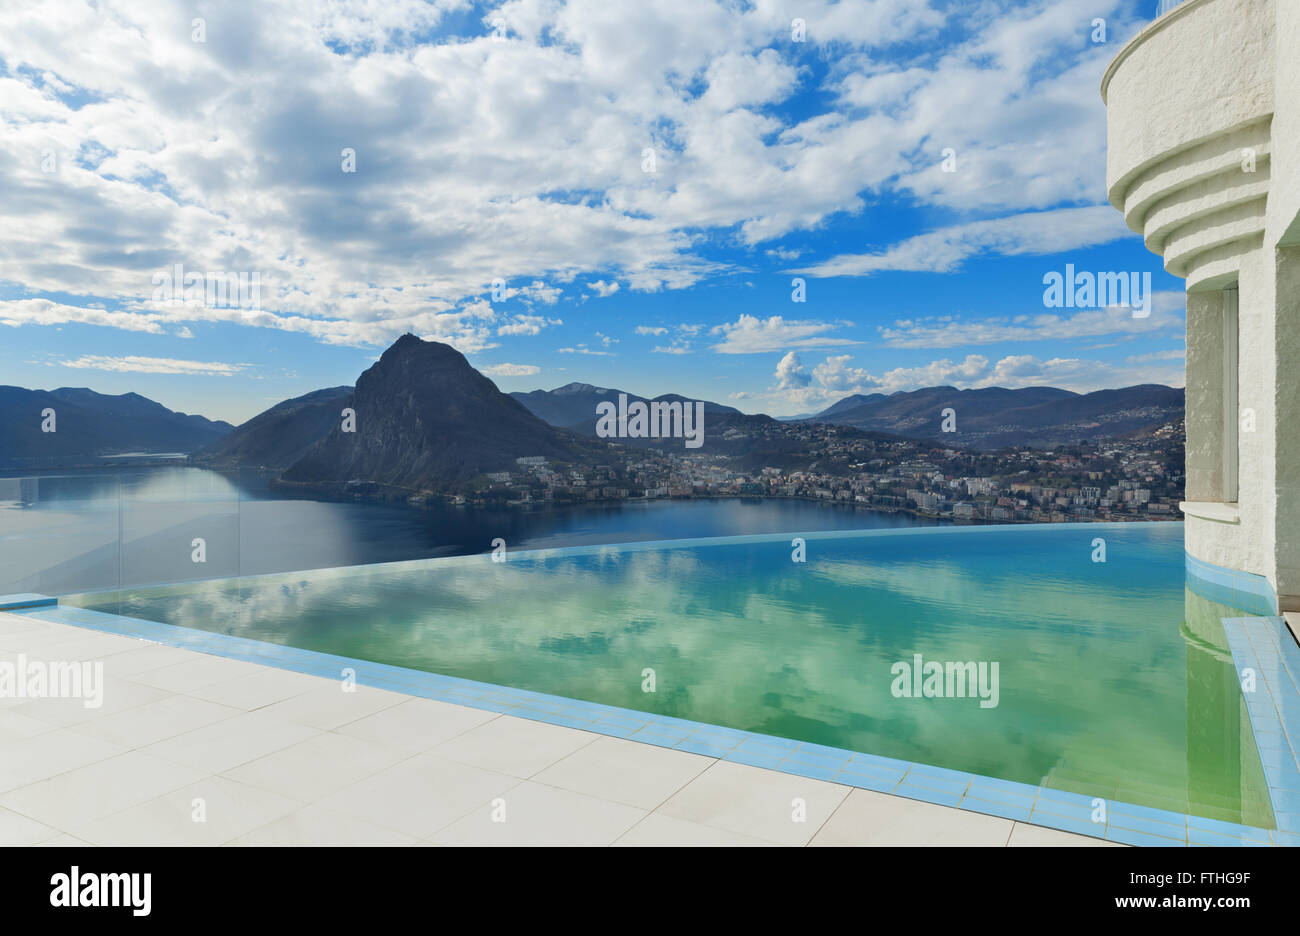 Beau paysage d'une maison moderne avec piscine à débordement Banque D'Images